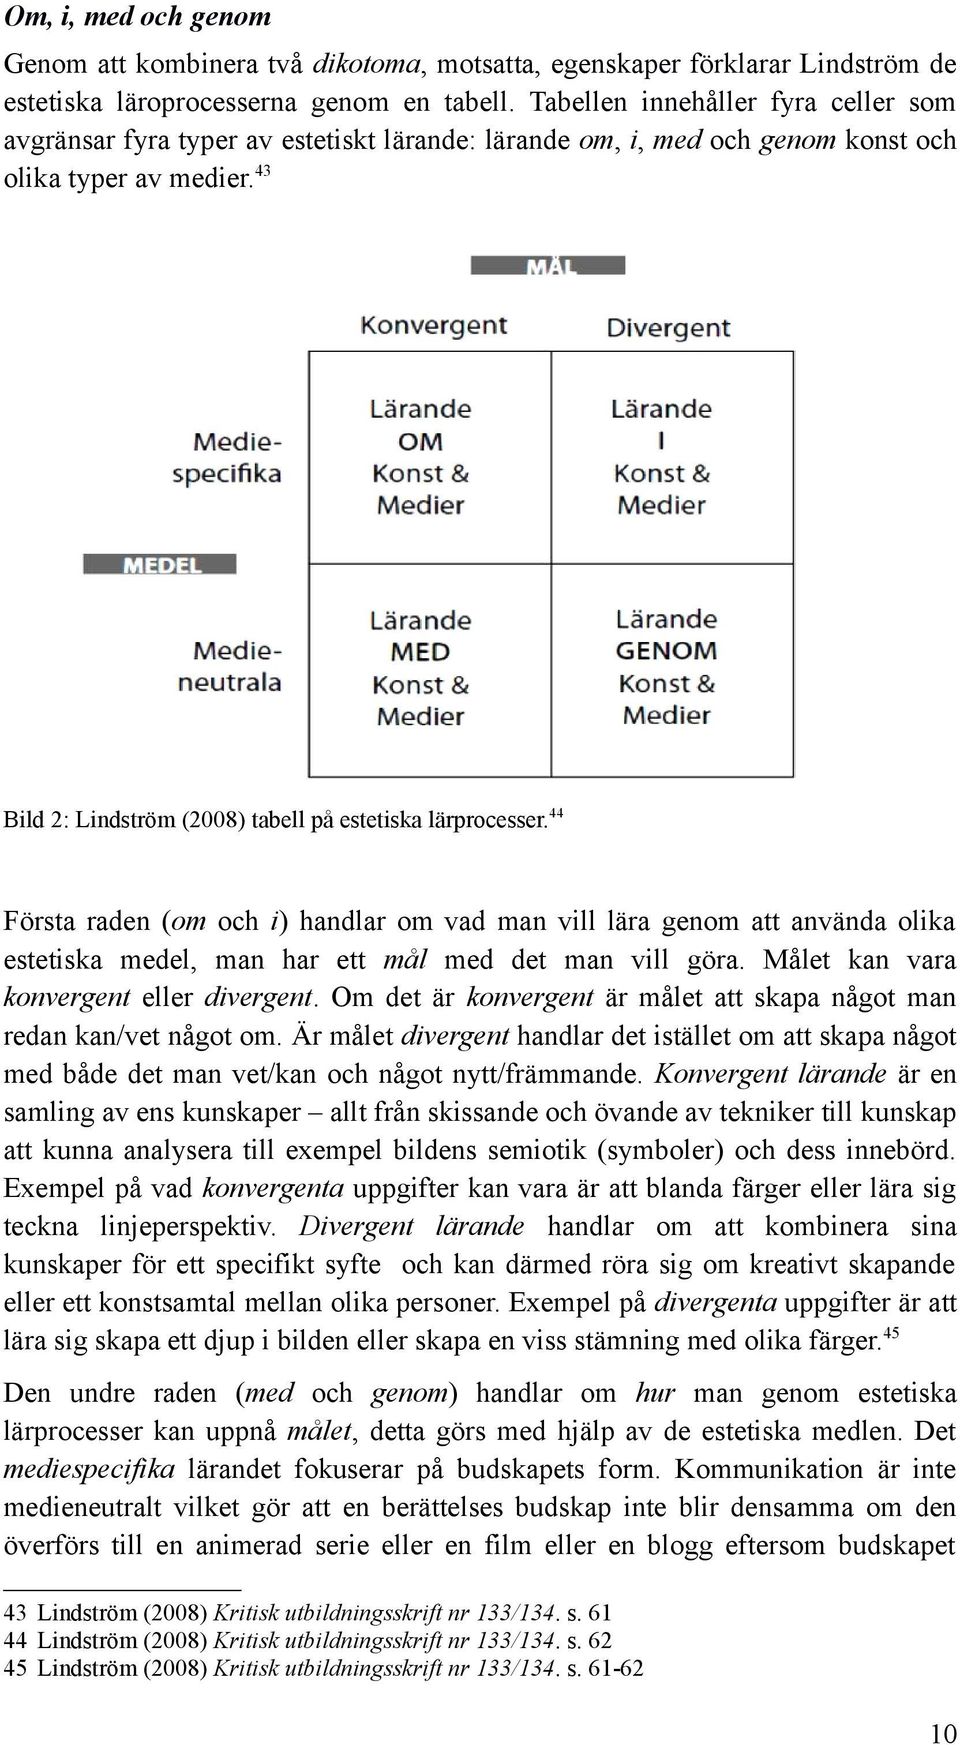 43 Bild 2: Lindström (2008) tabell på estetiska lärprocesser.44 Första raden (om och i) handlar om vad man vill lära genom att använda olika estetiska medel, man har ett mål med det man vill göra.